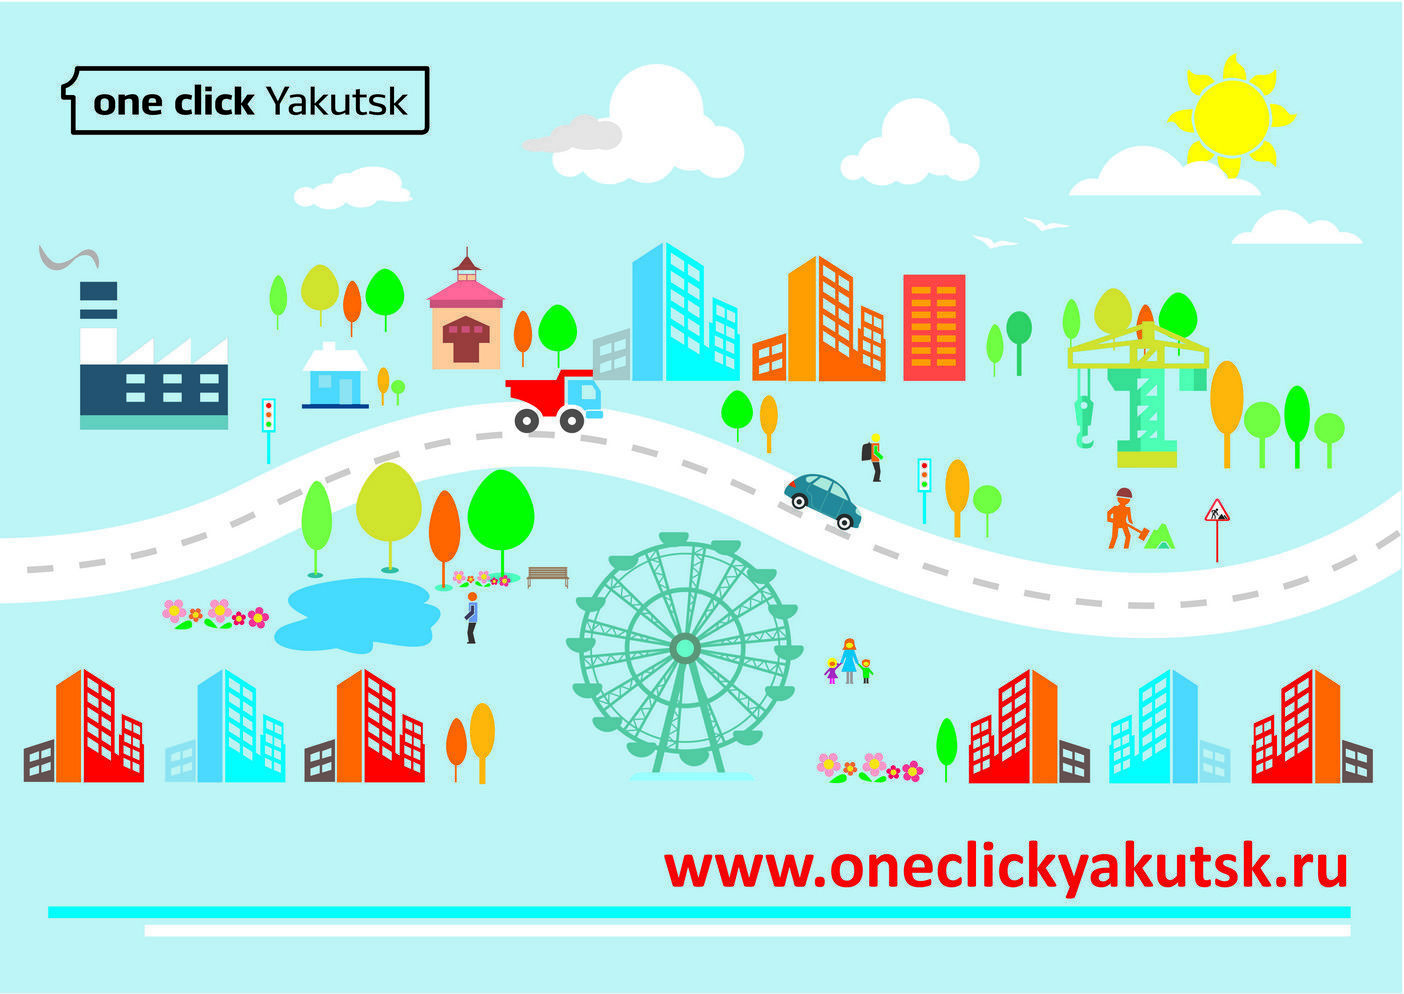 16 тысяч горожан пользуются One click Yakutsk 